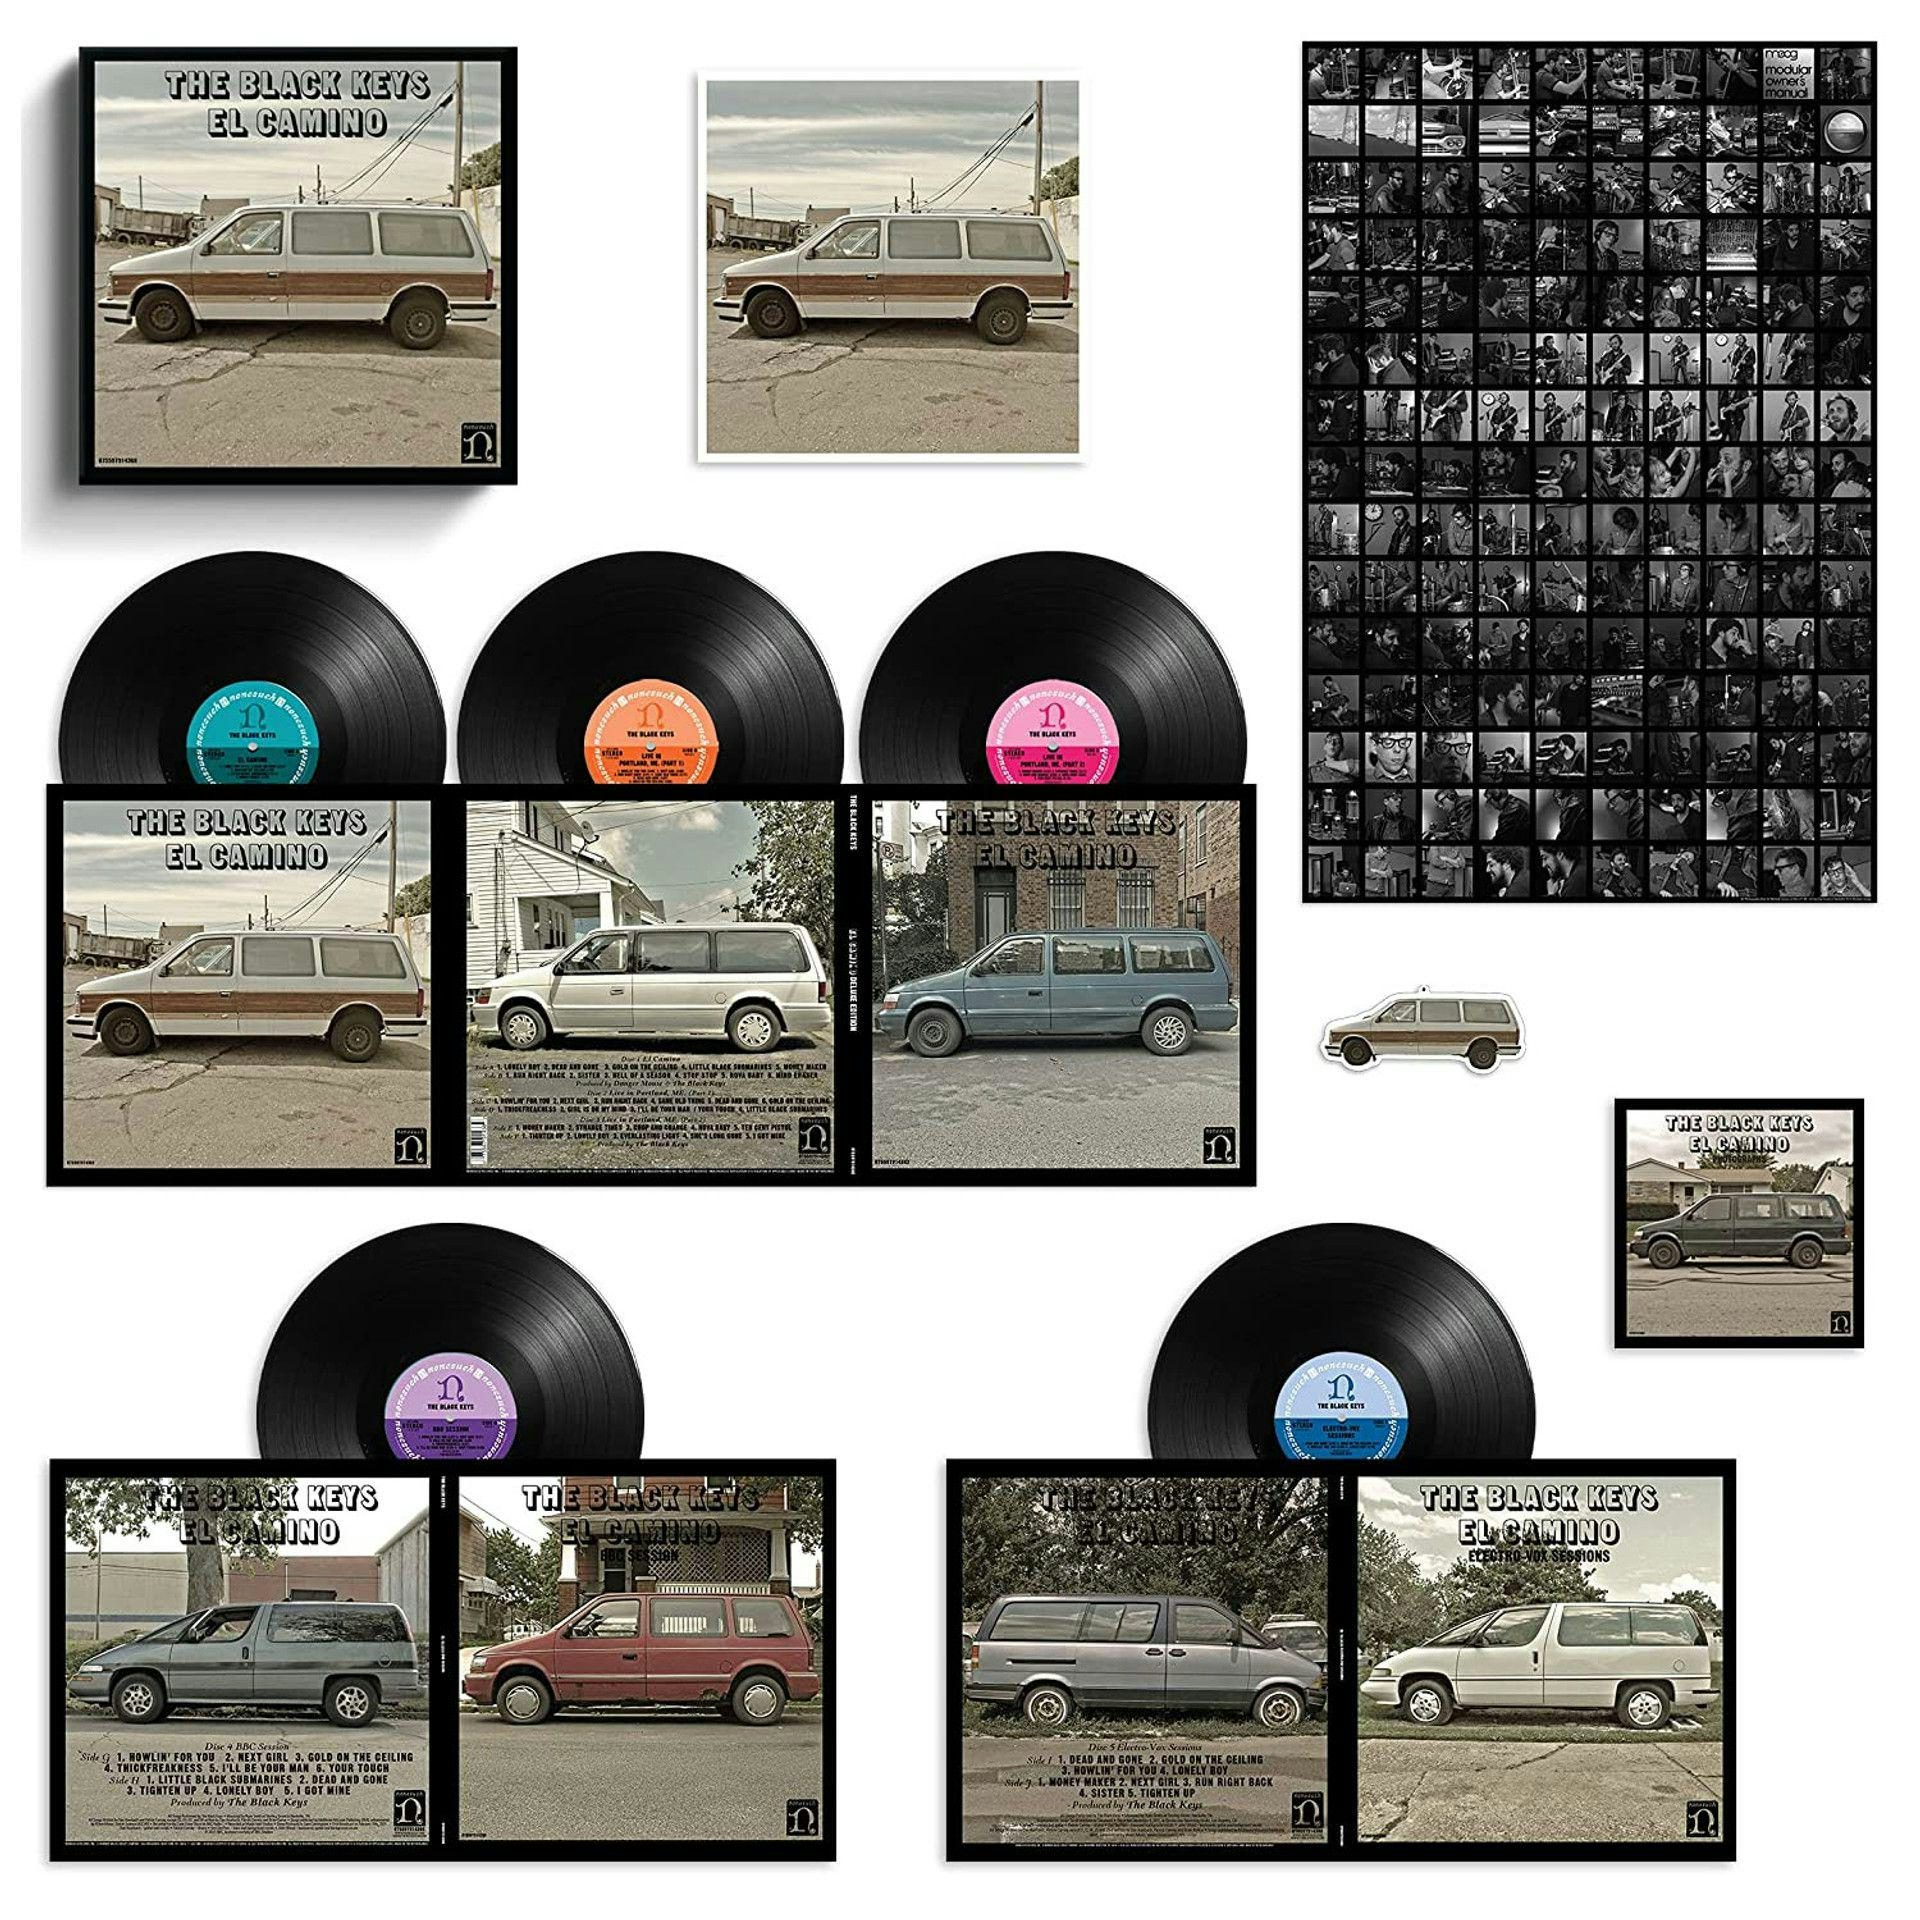 The Black Keys - El Camino (Super Deluxe Box Edition) (Vinyl LP